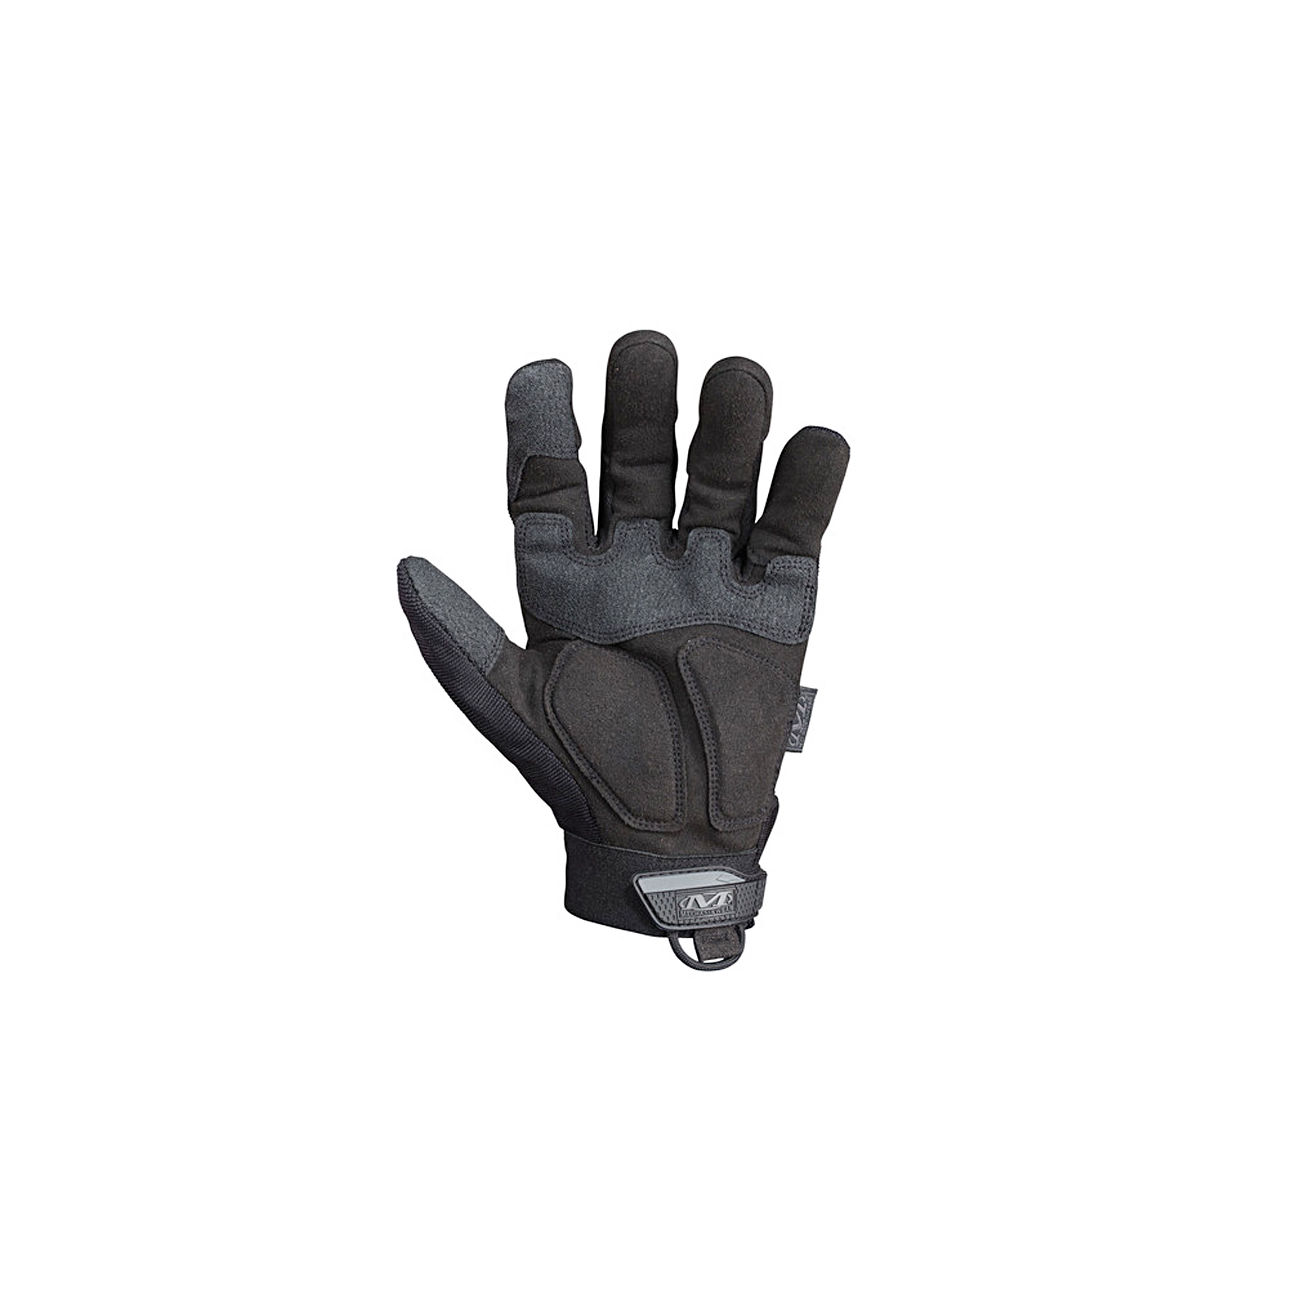 Mechanix Wear M-Pact Handschuhe 2012 covert Bild 1